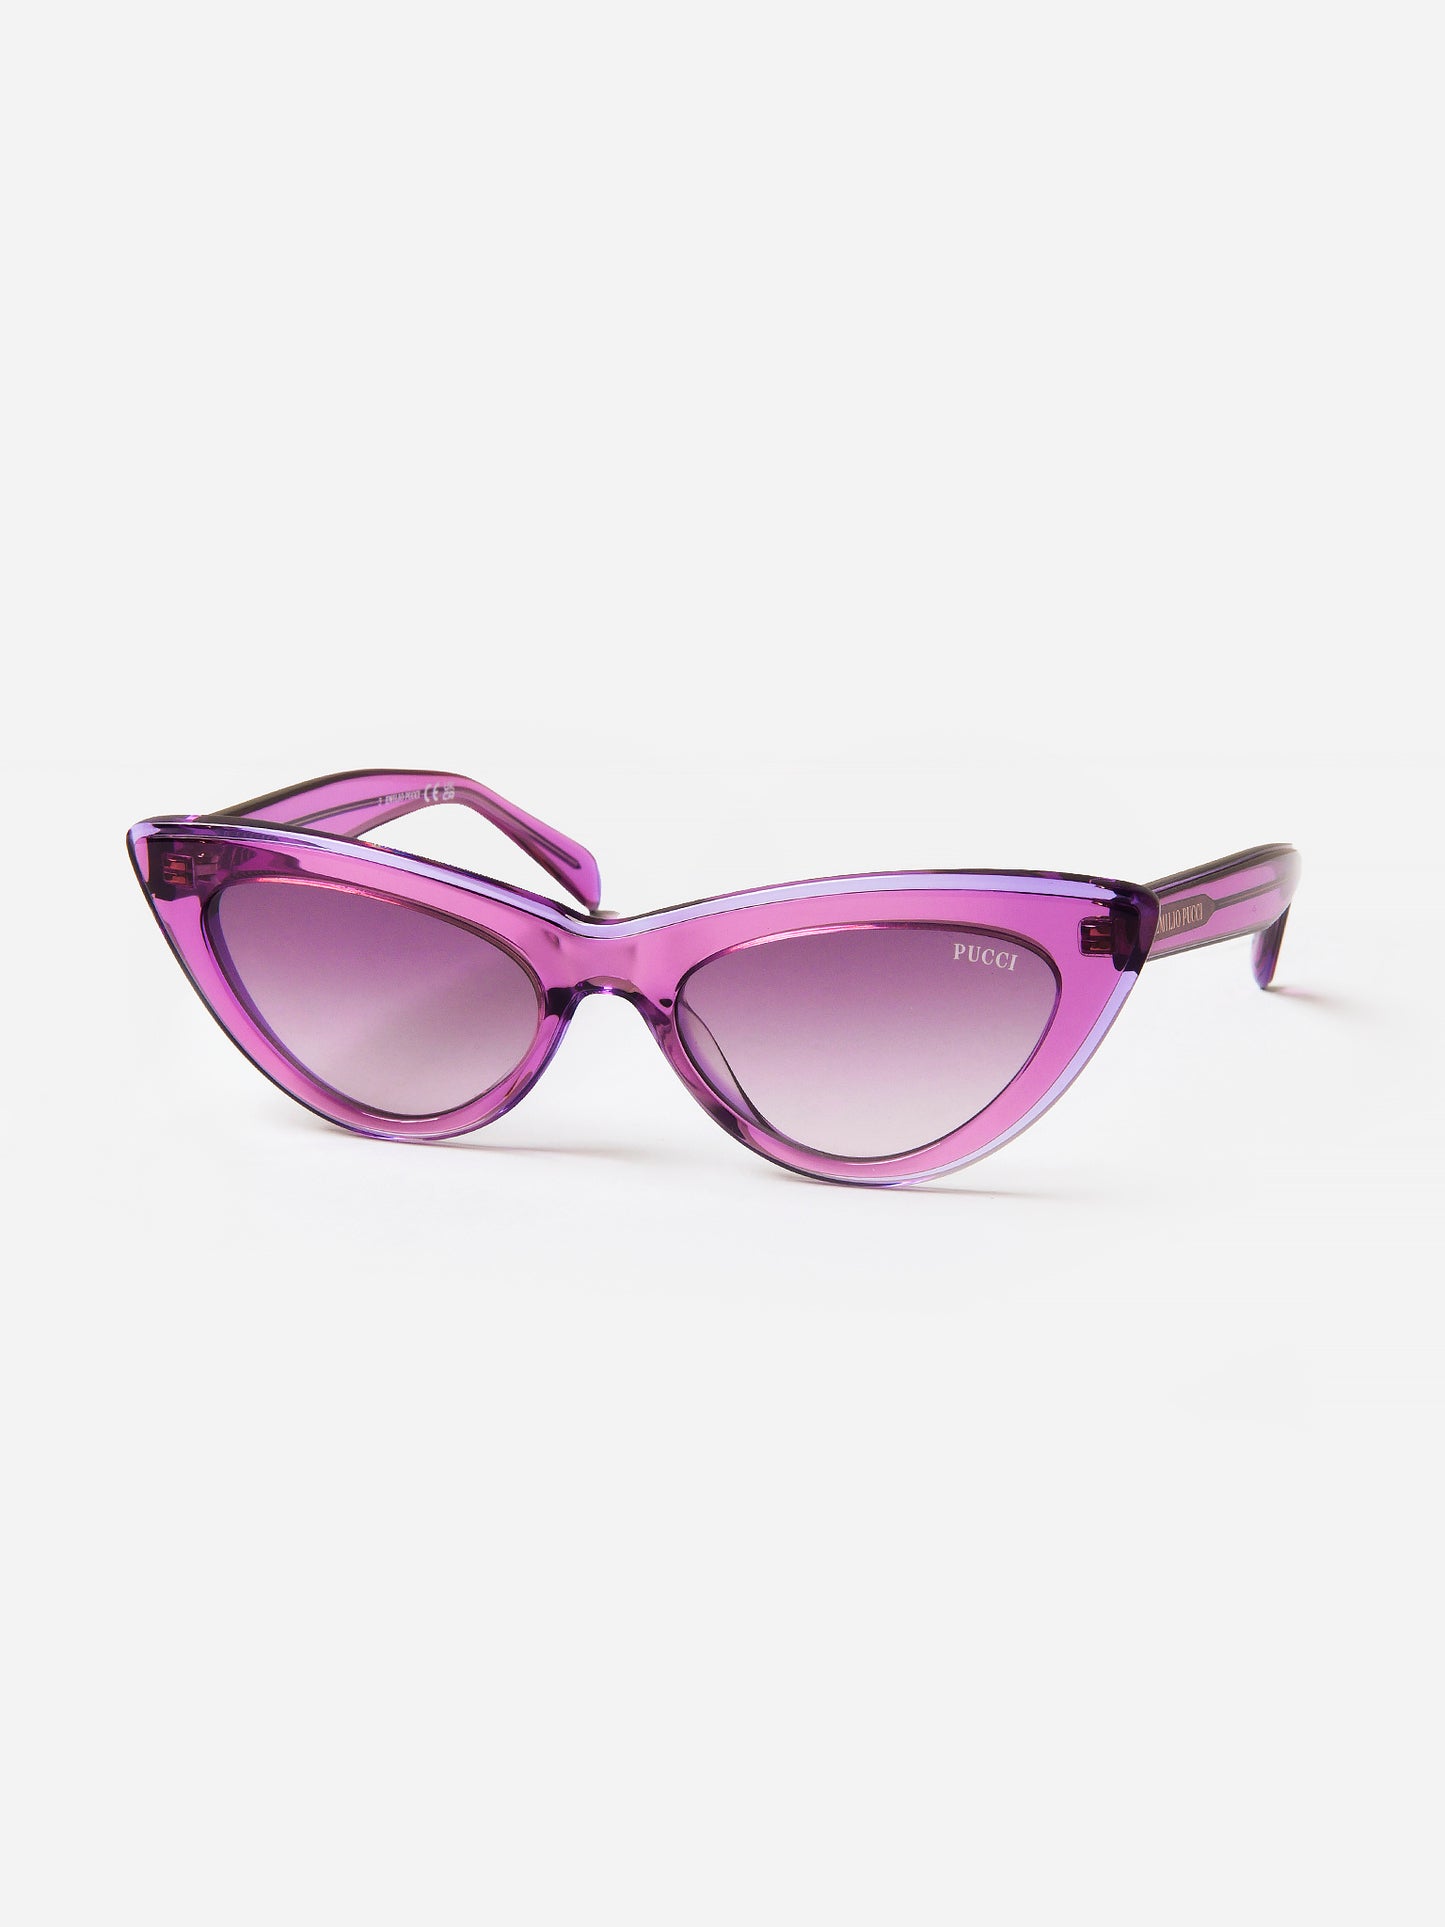 Emilio Pucci Women's EP0174 80Y Sunglasses